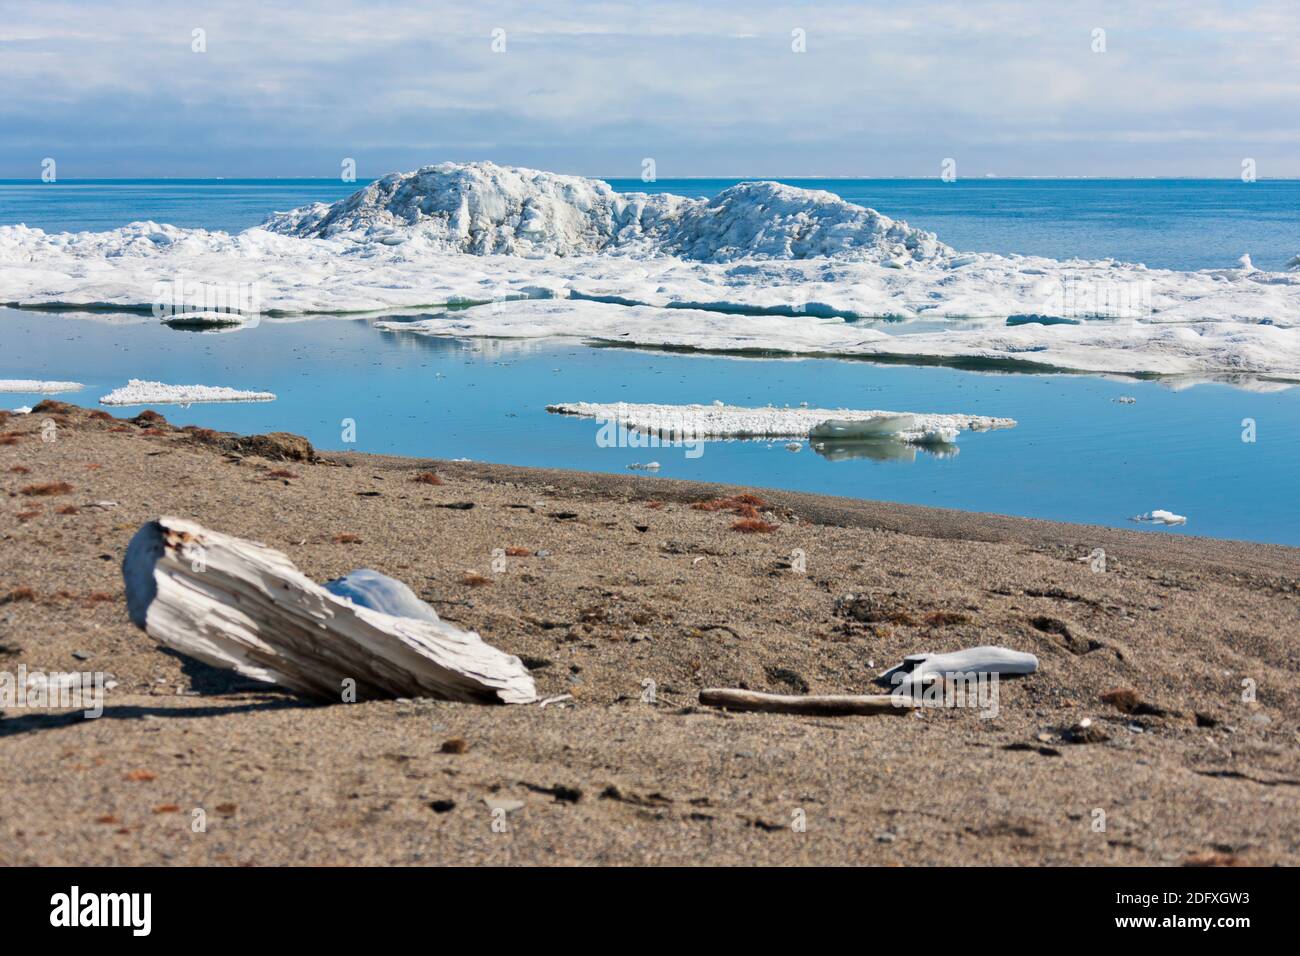 Plage, Cap Vankarem, l'île Wrangel, mer de Tchoukotka, en Russie extrême-orient Banque D'Images